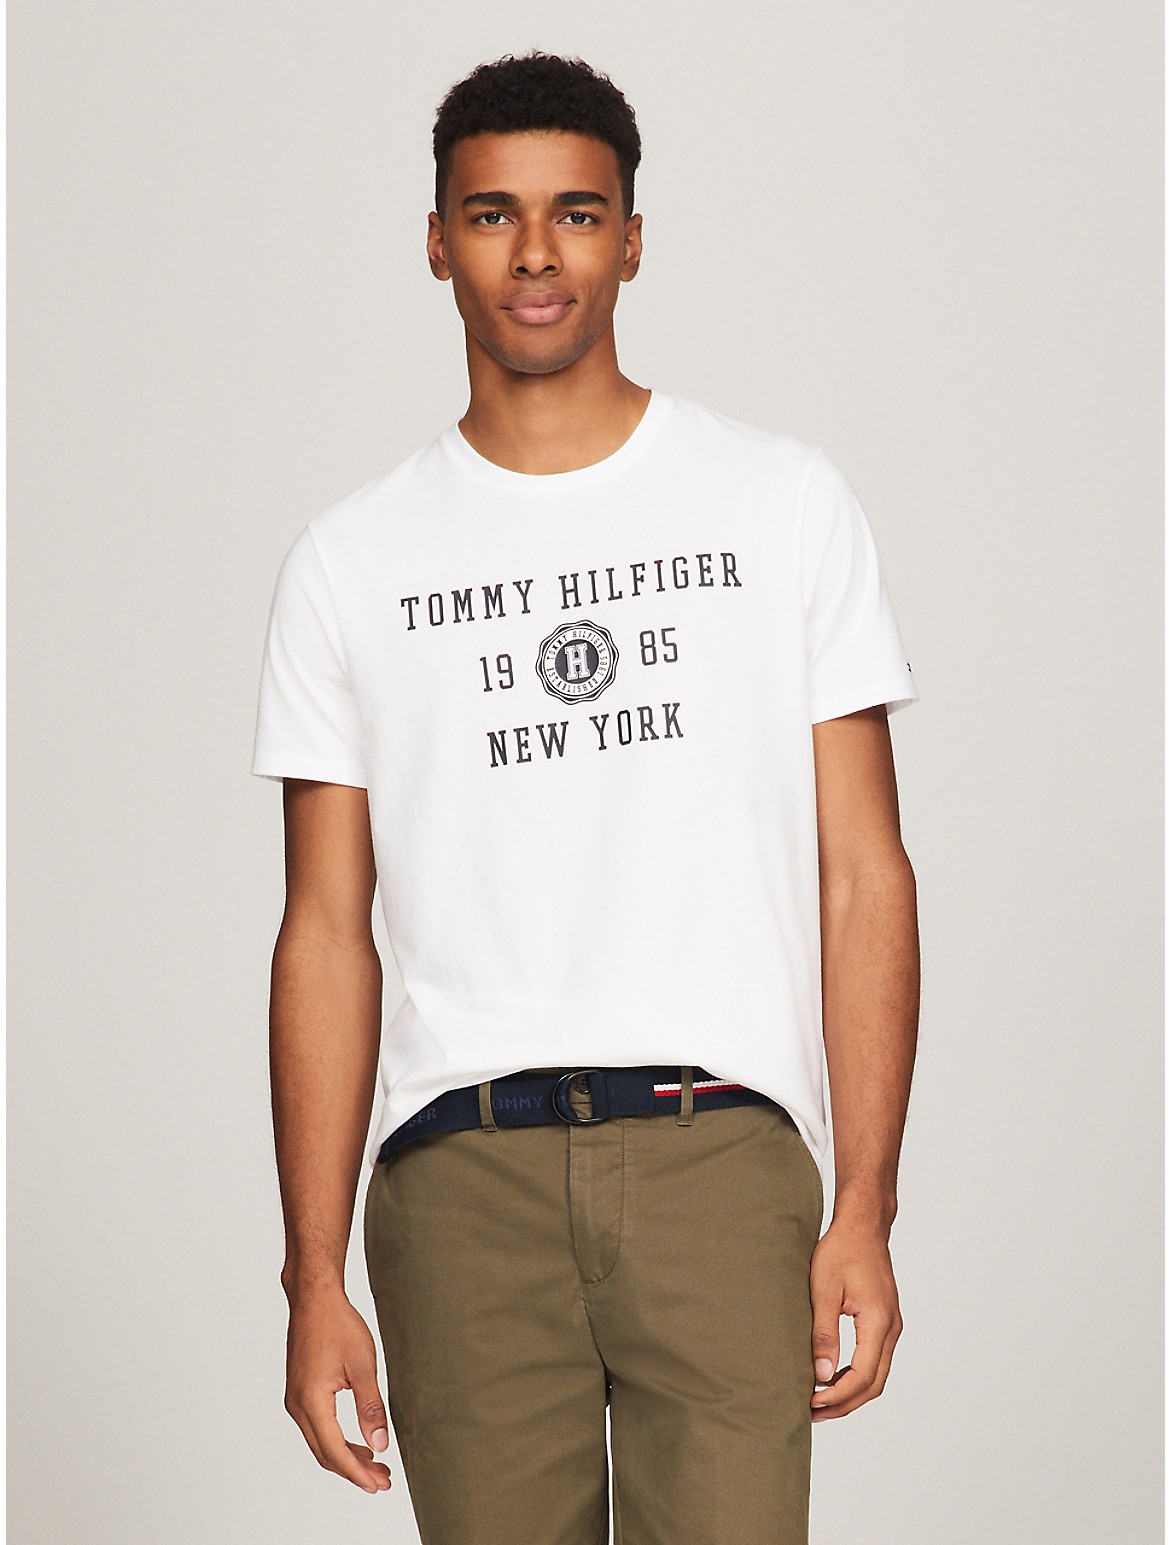 Tommy Hilfiger Men's Hilfiger New York Graphic T-Shirt - White - XXXL